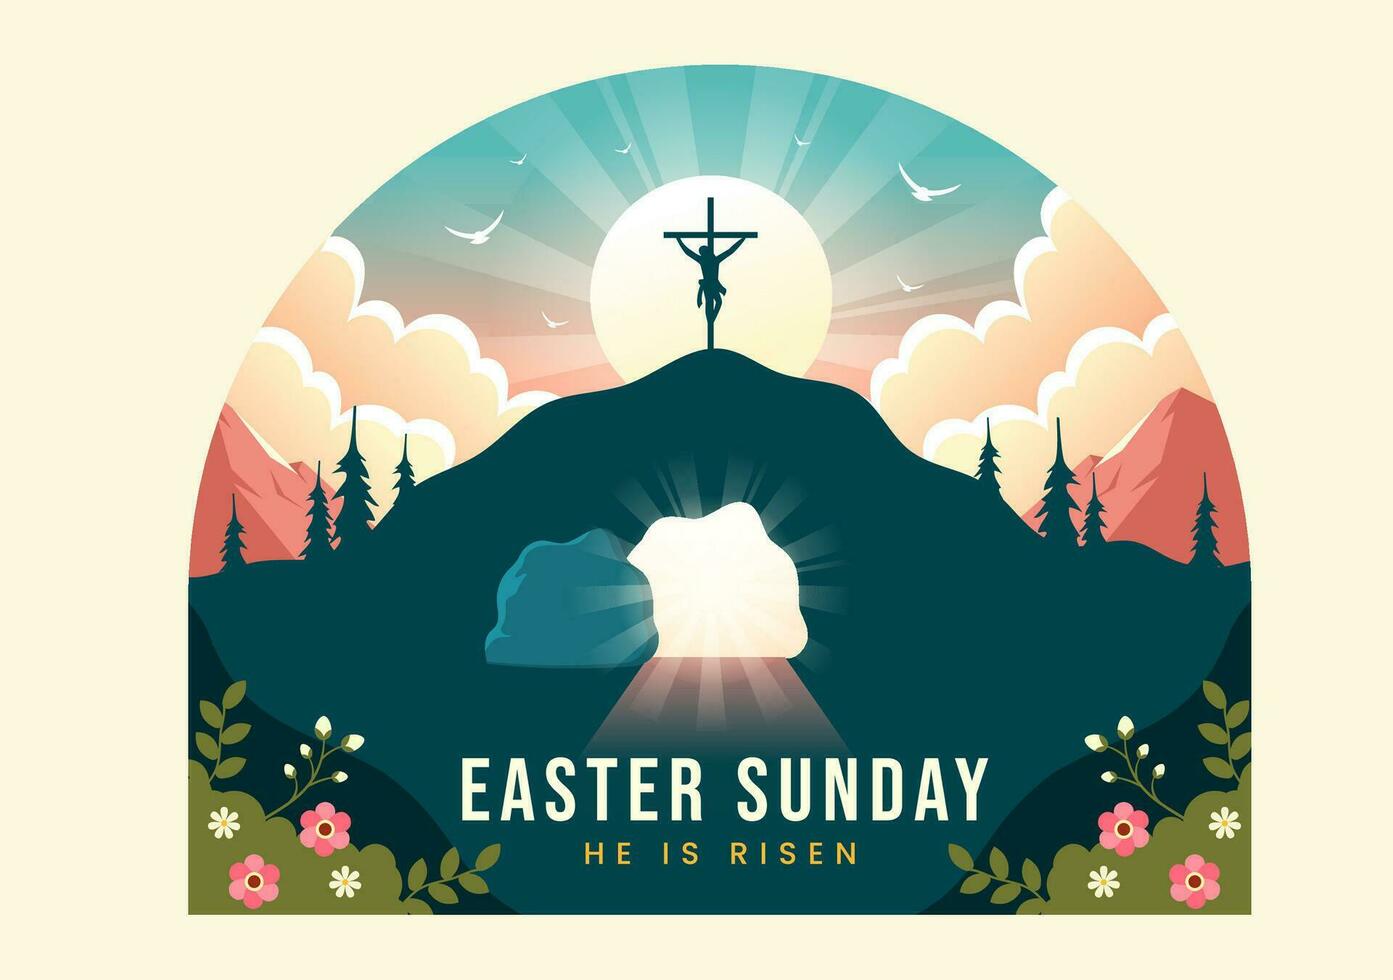 contento Pascua de Resurrección domingo vector ilustración de Jesús, él es resucitado y celebracion de Resurrección con cueva y el cruzar en plano dibujos animados antecedentes